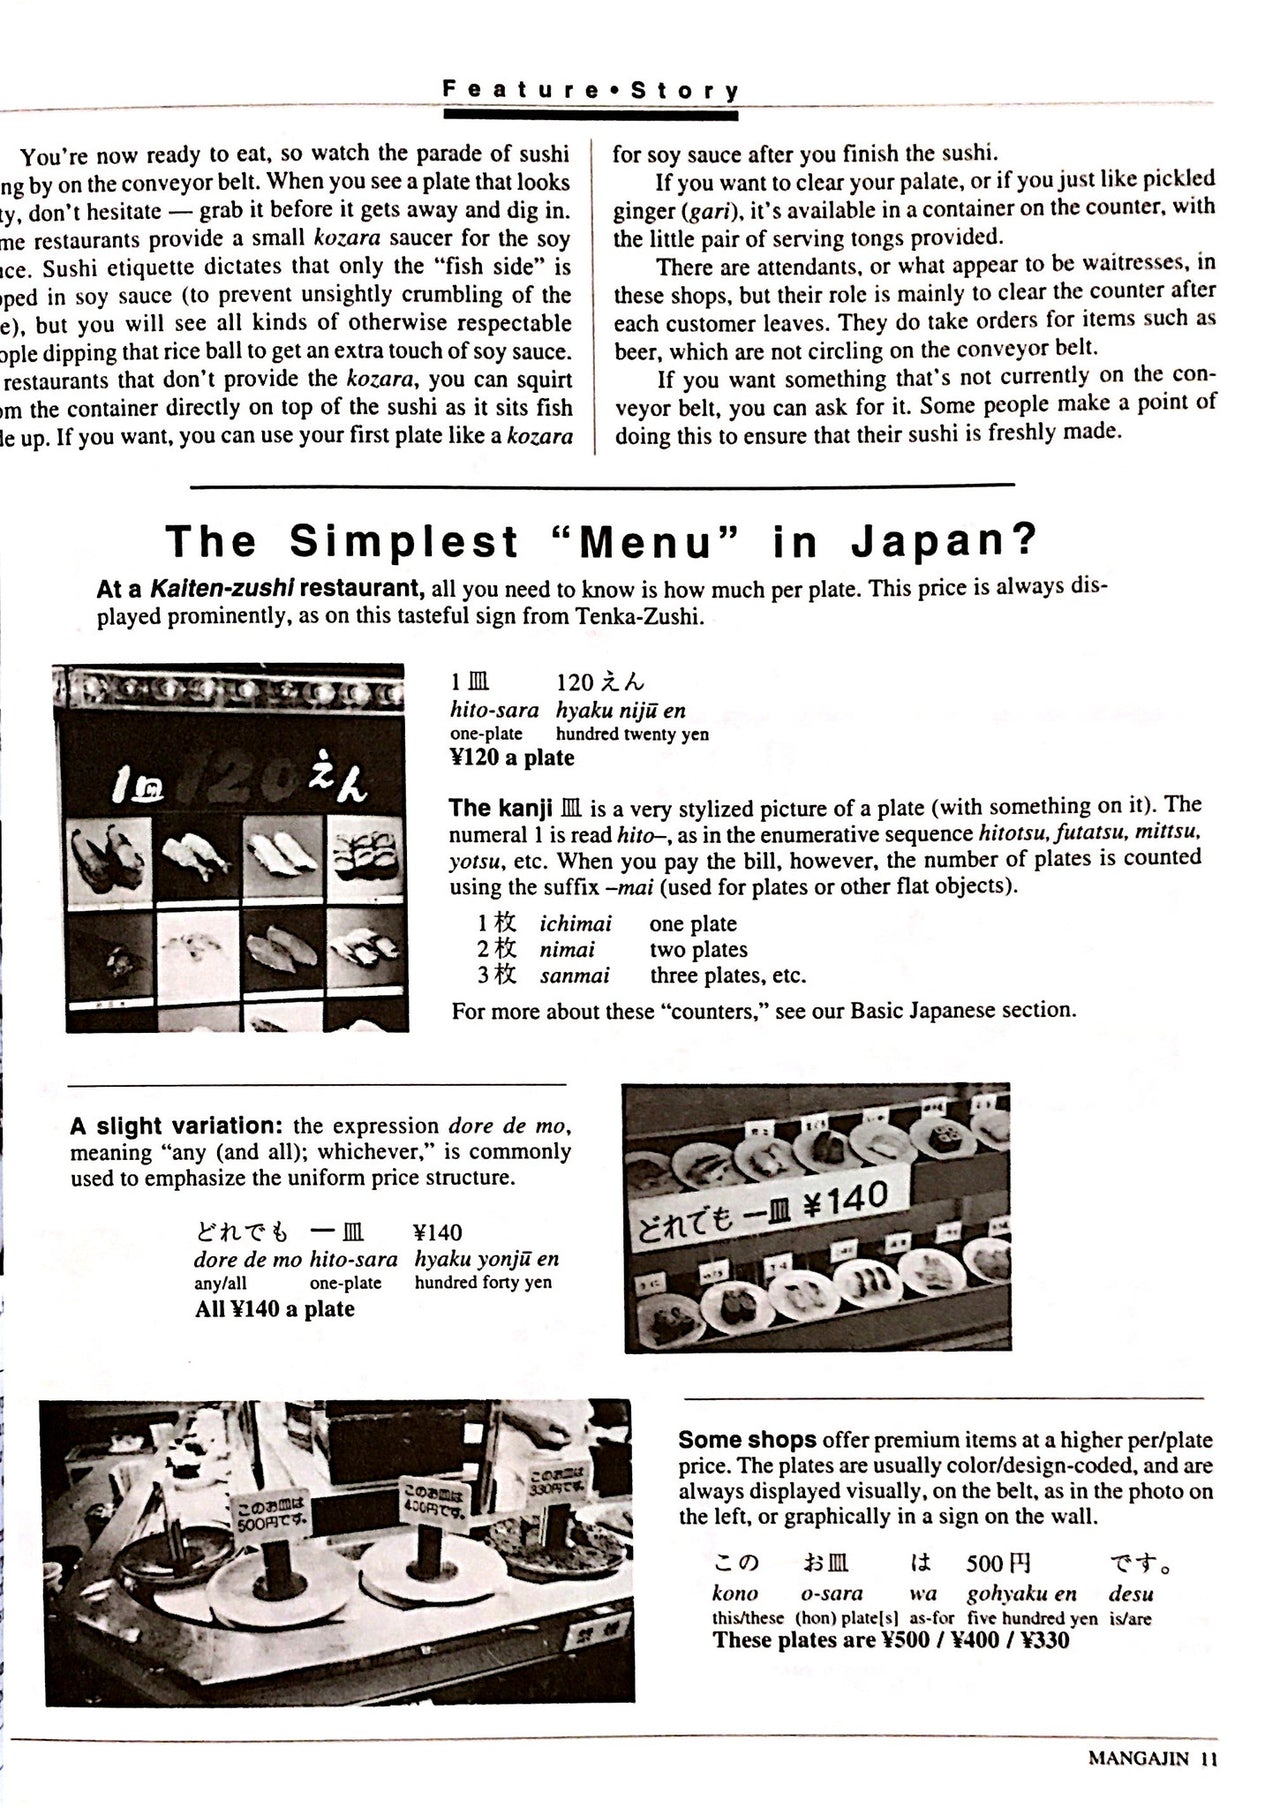 Mangajin 46 - The Japan Shop